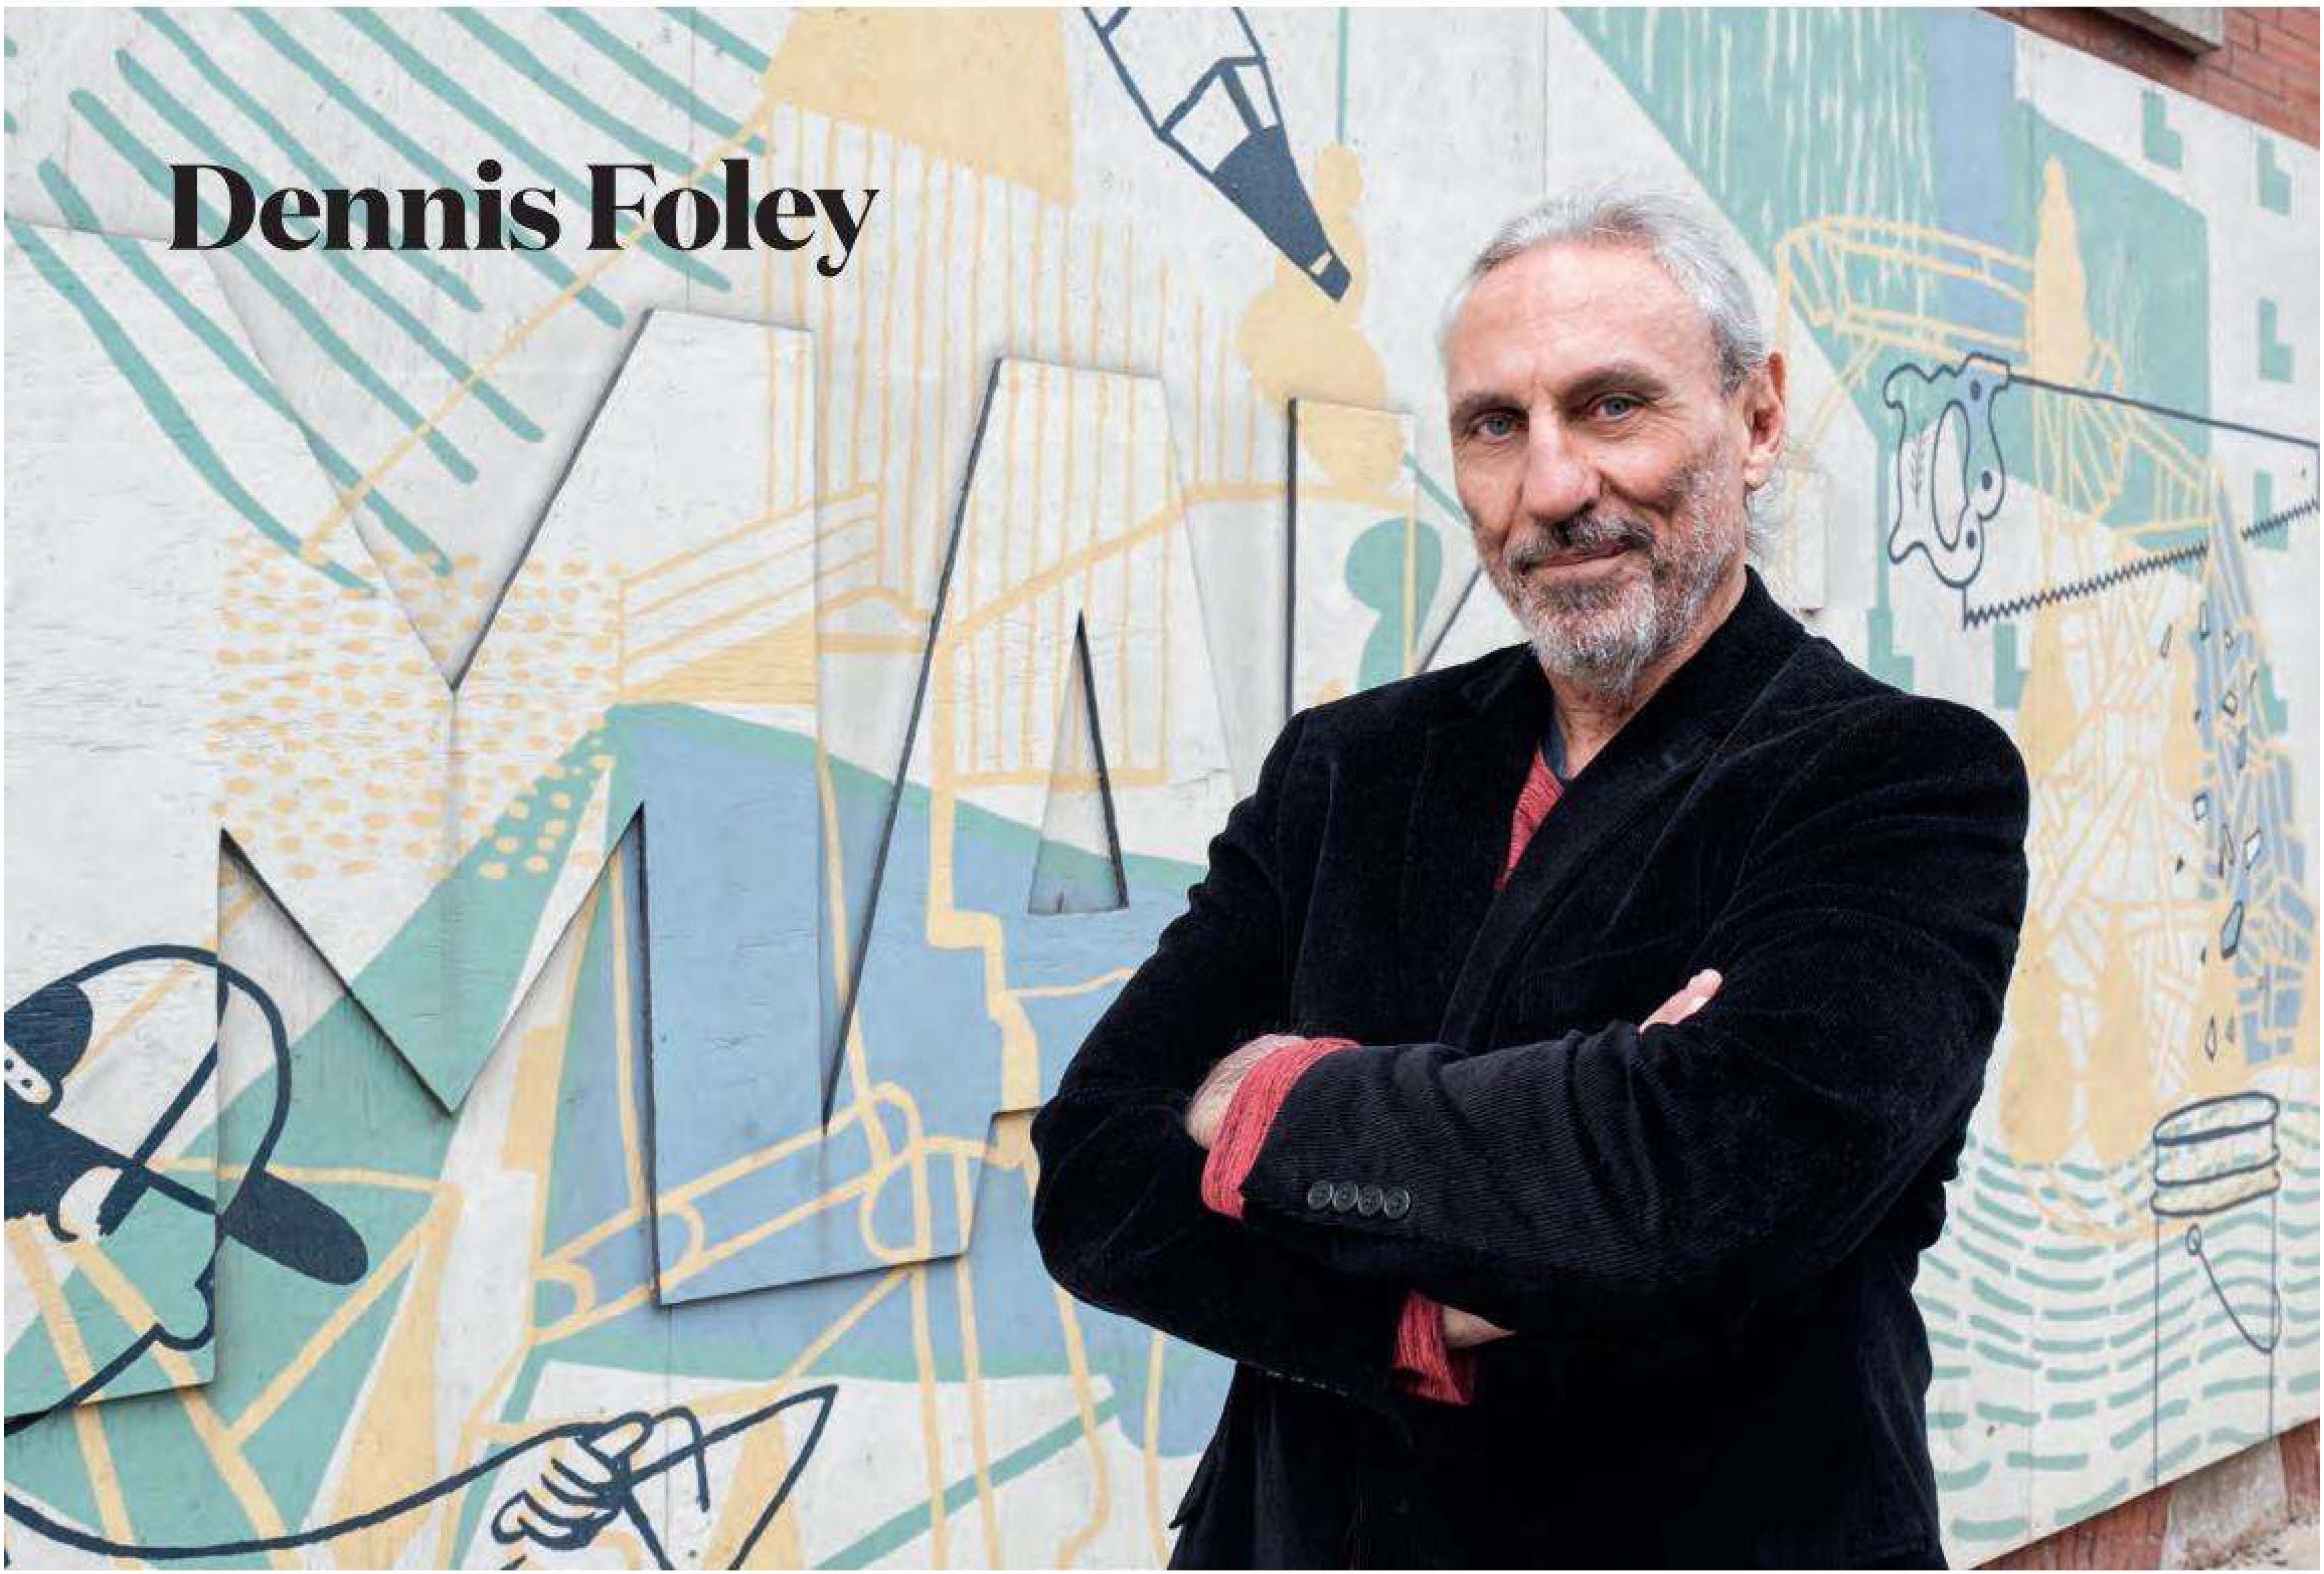 Interview with Dennis Foley in Jocks & Nerds Magazine